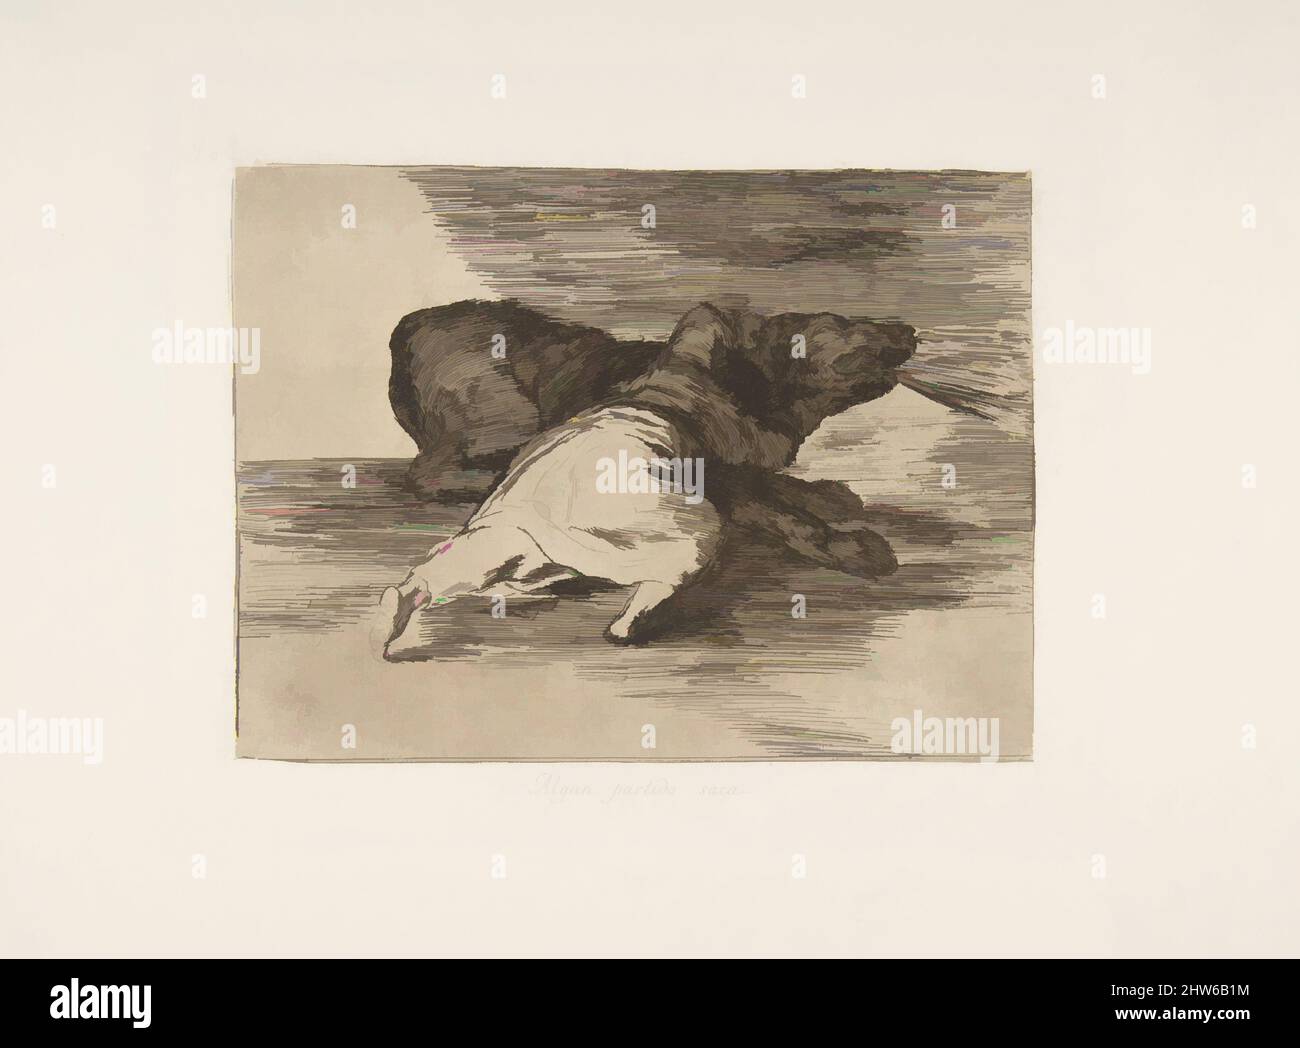 Art inspiré par la planche 40 de 'les désastres de la guerre' (Los Desastres de la Guerra):'il en tire quelque chose (Algun partido saca), 1810 (publié en 1863), Etching, Drypoint et burin, plaque: 6 7/8 × 8 7/16 in. (17,4 × 21,5 cm), Prints, Goya (Francisco de Goya y Lucientes) (espagnol, oeuvres classiques modernisées par Artotop avec une touche de modernité. Formes, couleur et valeur, impact visuel accrocheur sur l'art émotions par la liberté d'œuvres d'art d'une manière contemporaine. Un message intemporel qui cherche une nouvelle direction créative. Artistes qui se tournent vers le support numérique et créent le NFT Artotop Banque D'Images